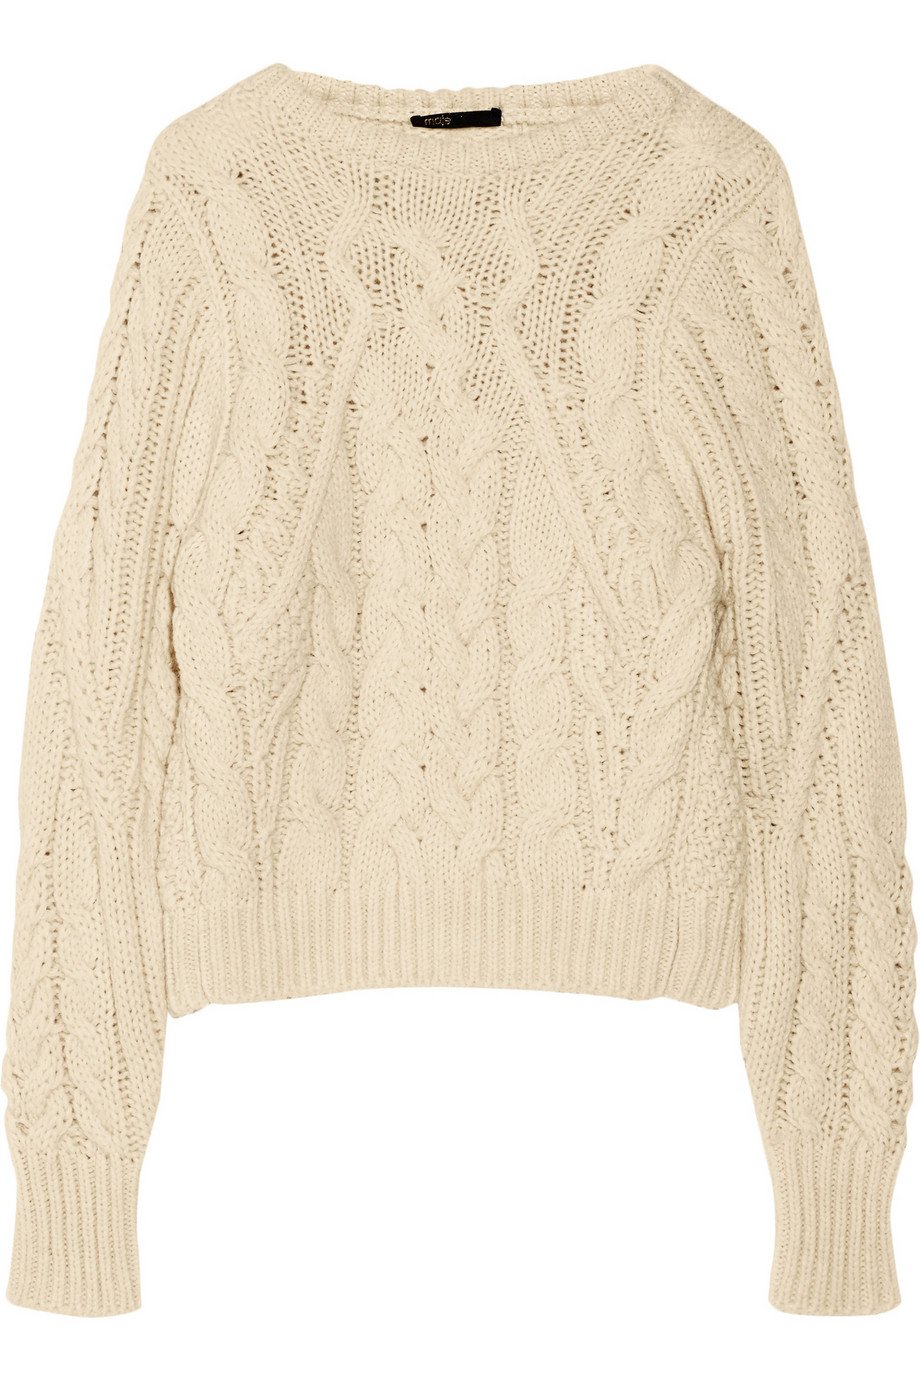 Maje Kalimnos Aran-Knit Sweater in White (Natural) - Lyst